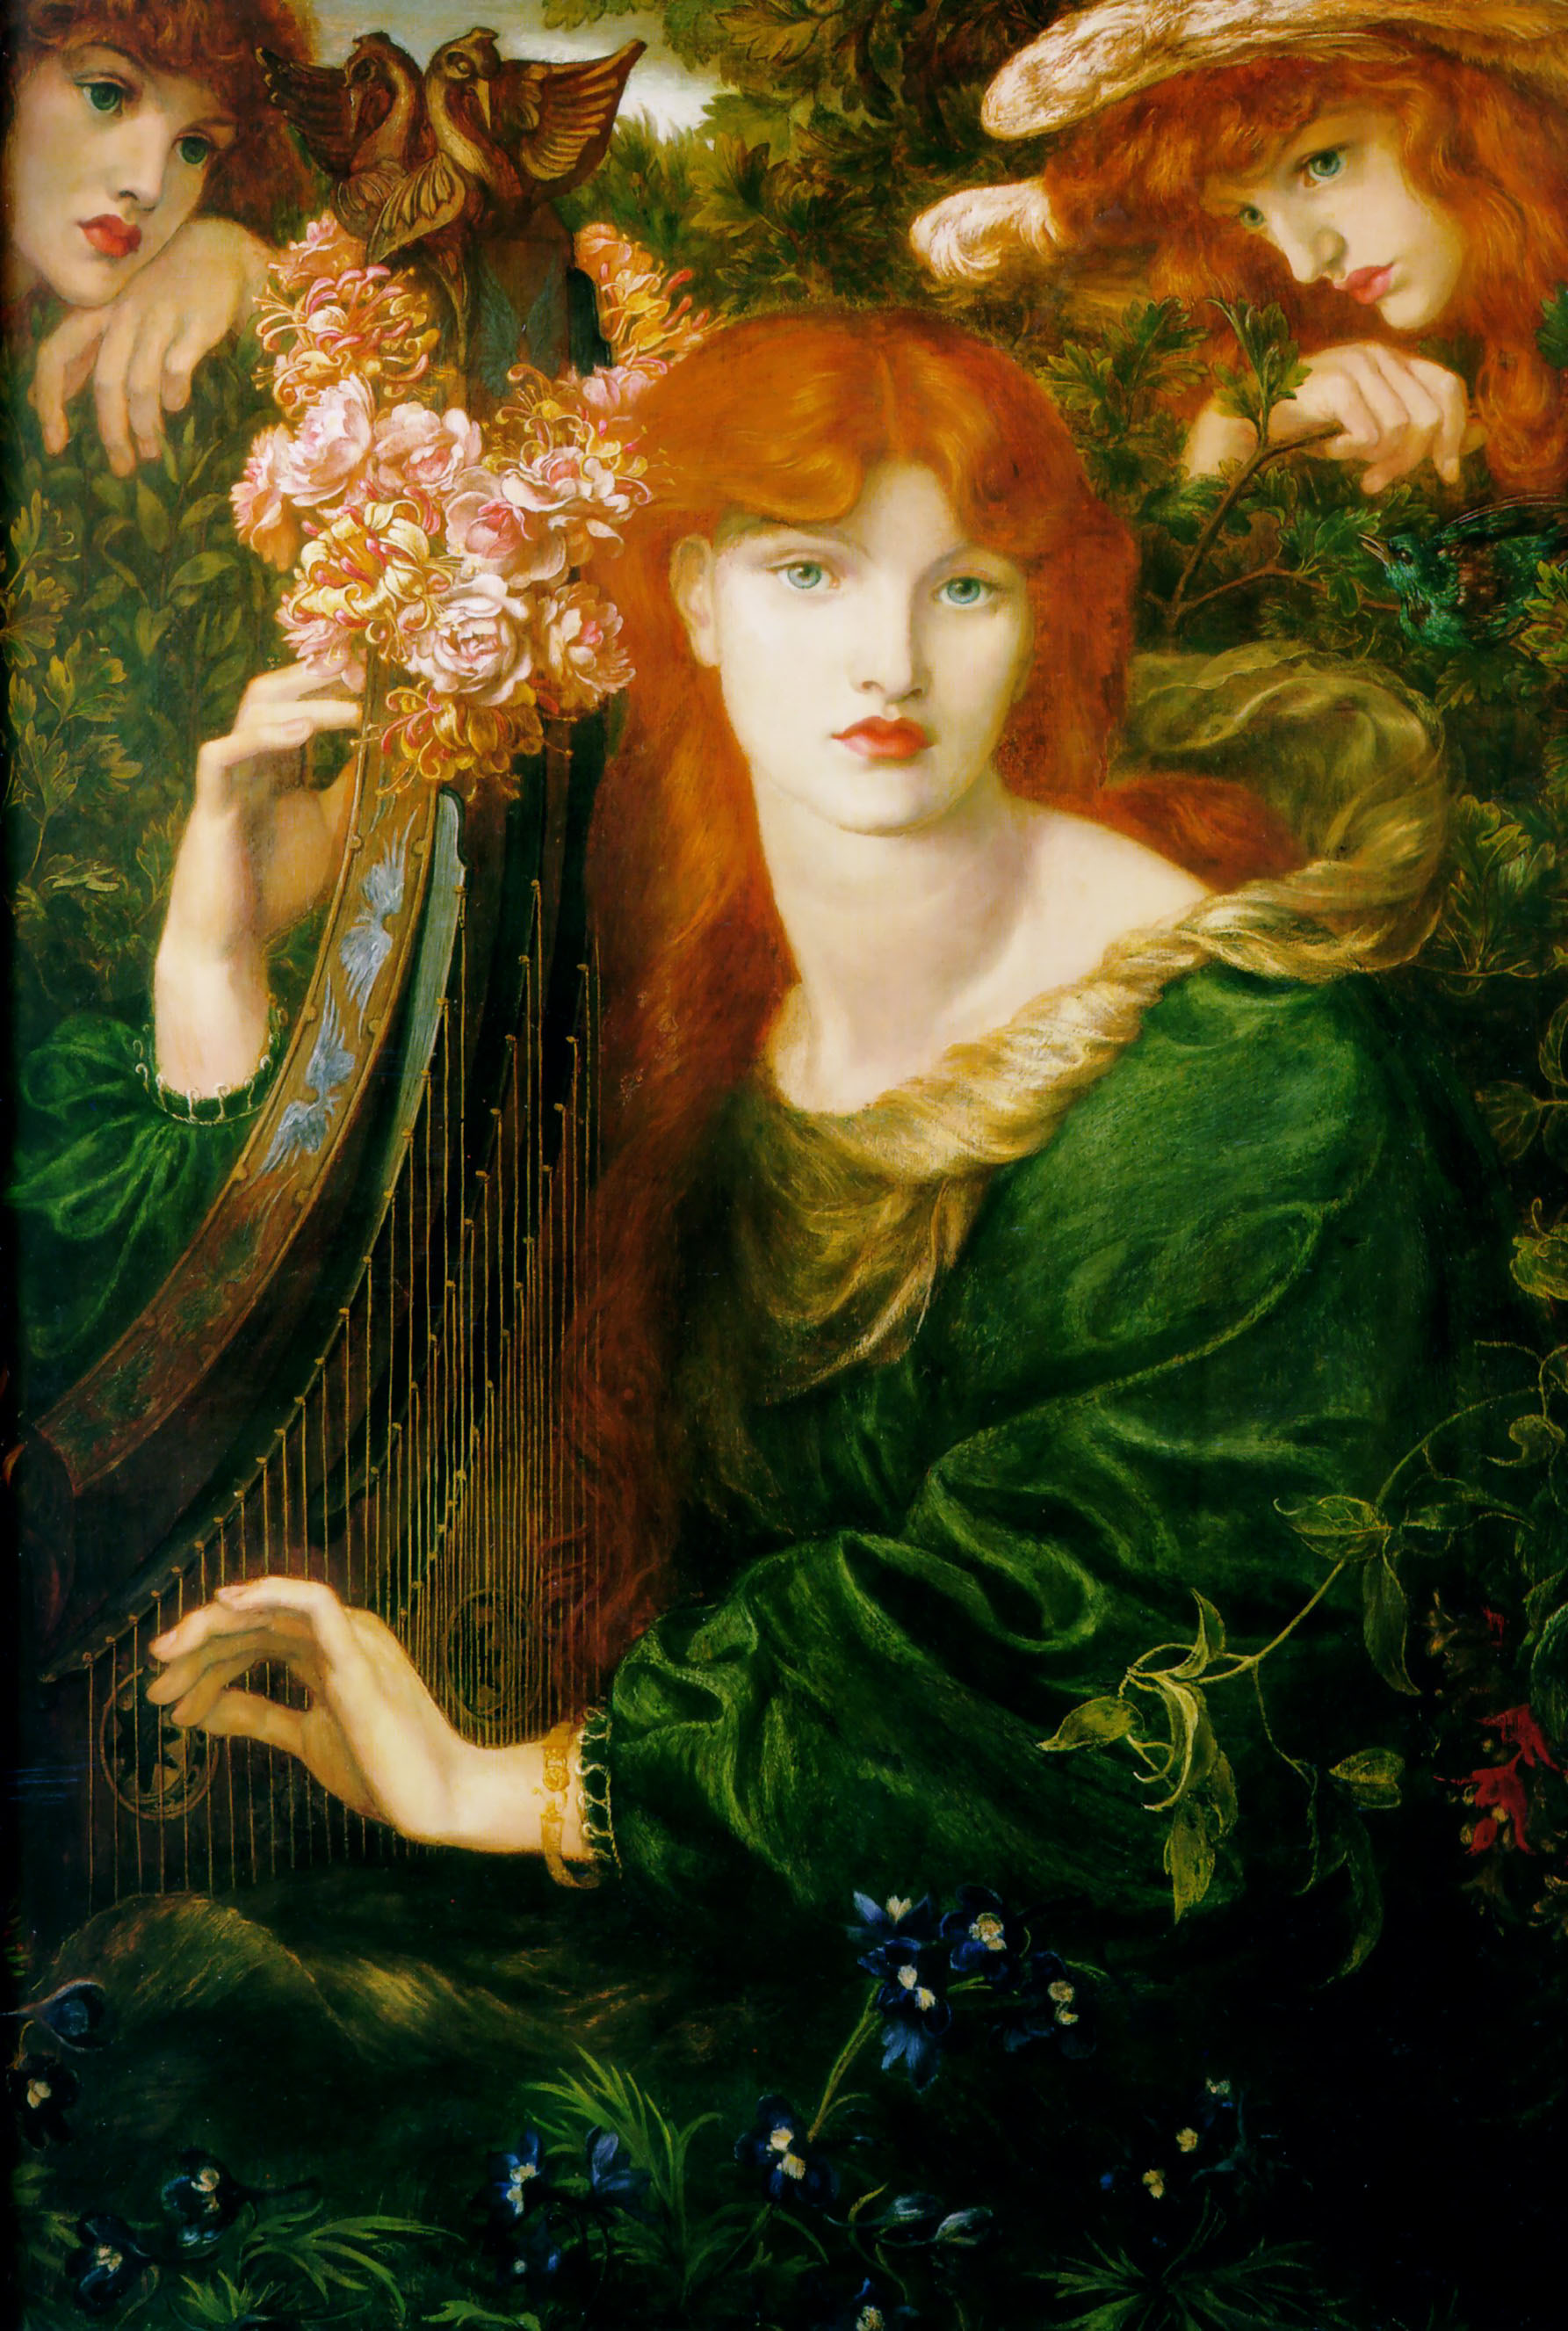 ラ・ギルランダータ by Dante Gabriel Rossetti - 1873年 - 124 × 85 cm 